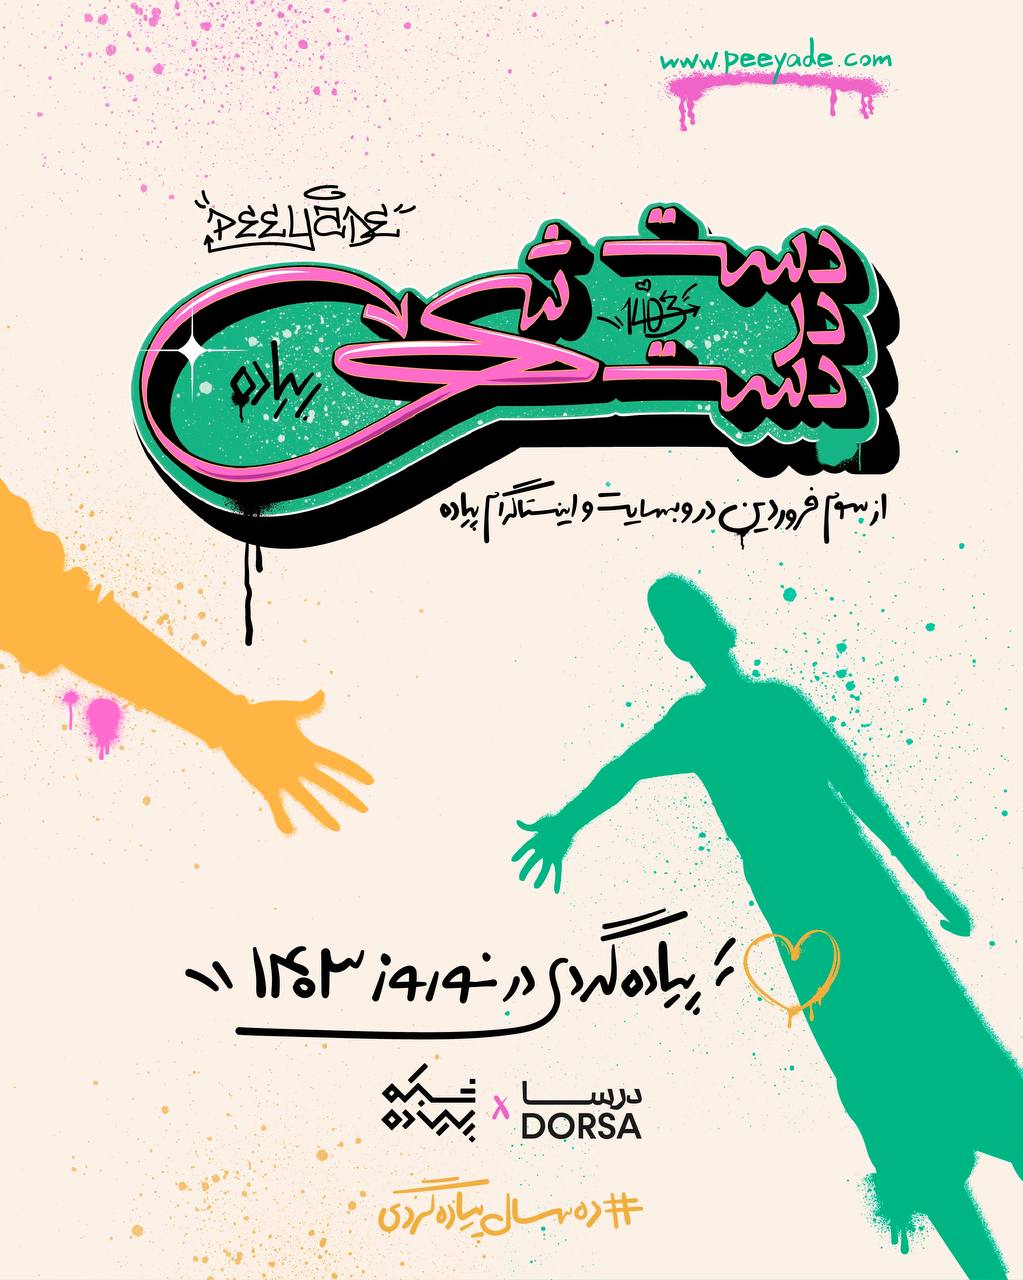 کمپین نوروزی «بزم دال» درسا، با نمادهای نوستالژیک در شهر تهران 4